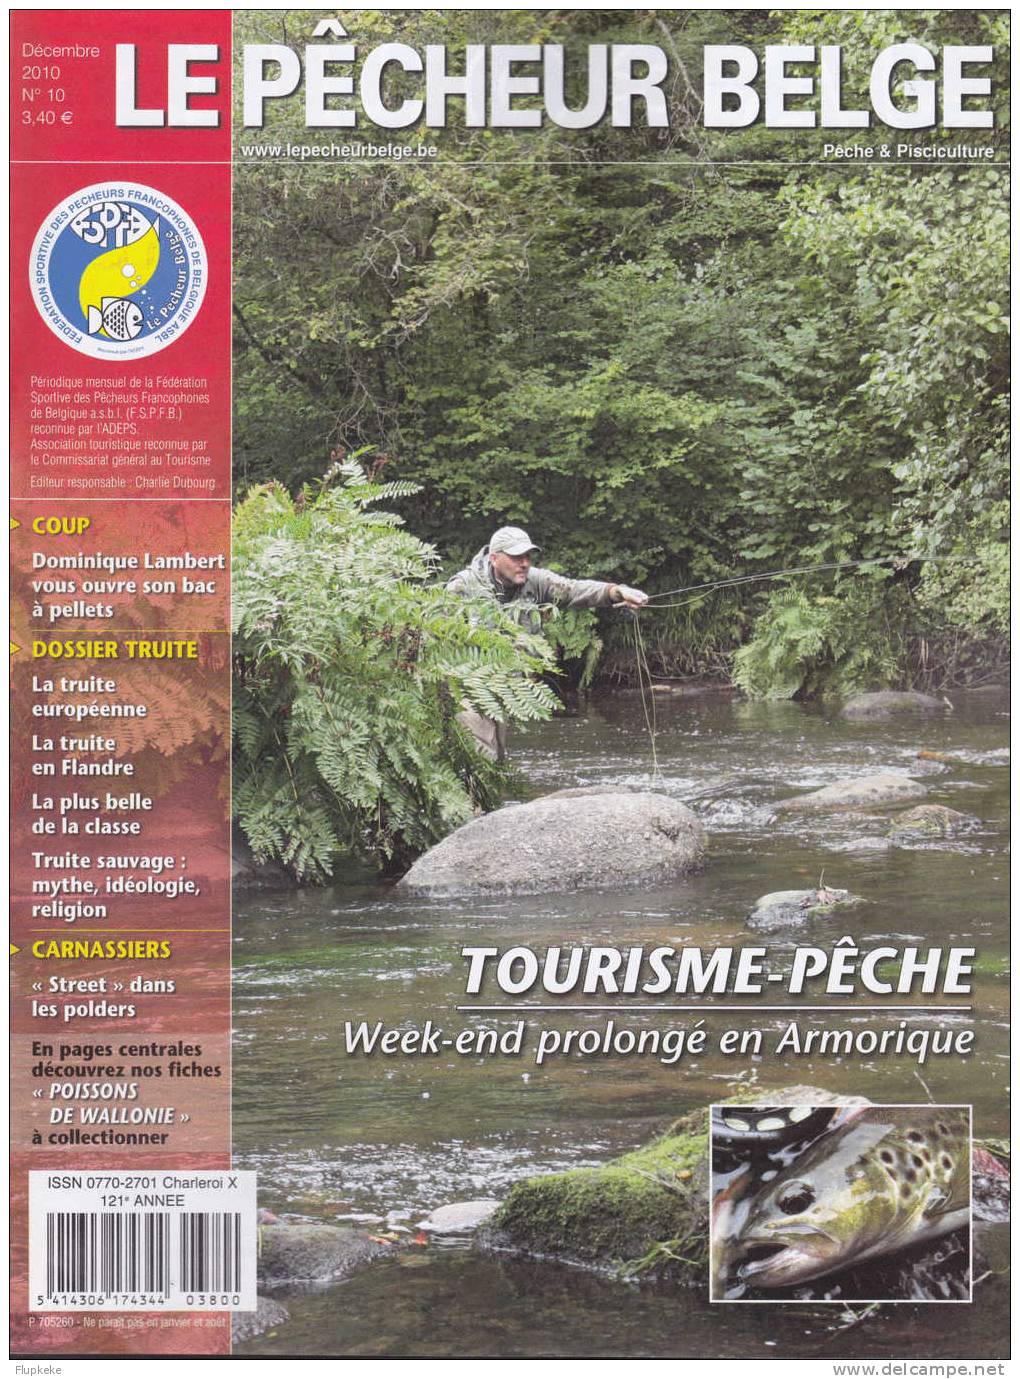 Le Pêcheur Belge 10 Décembre 2010 Tourisme Et Pêche En Armorique - Chasse & Pêche